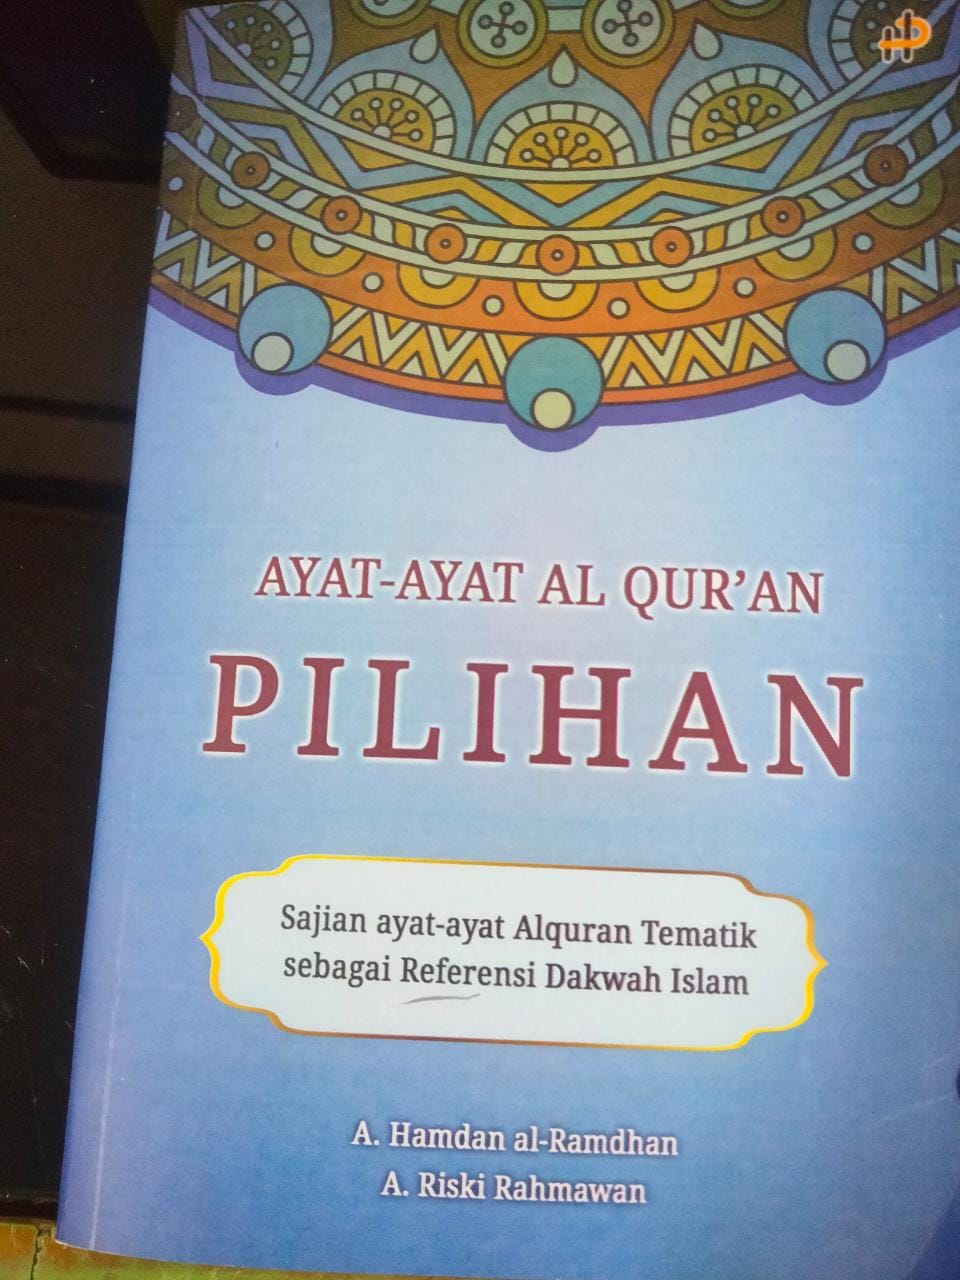 Ayat-ayat Al Quran pilihan :  sajian ayat-ayat Alquran tematik sebagai referensi dakwah Islam